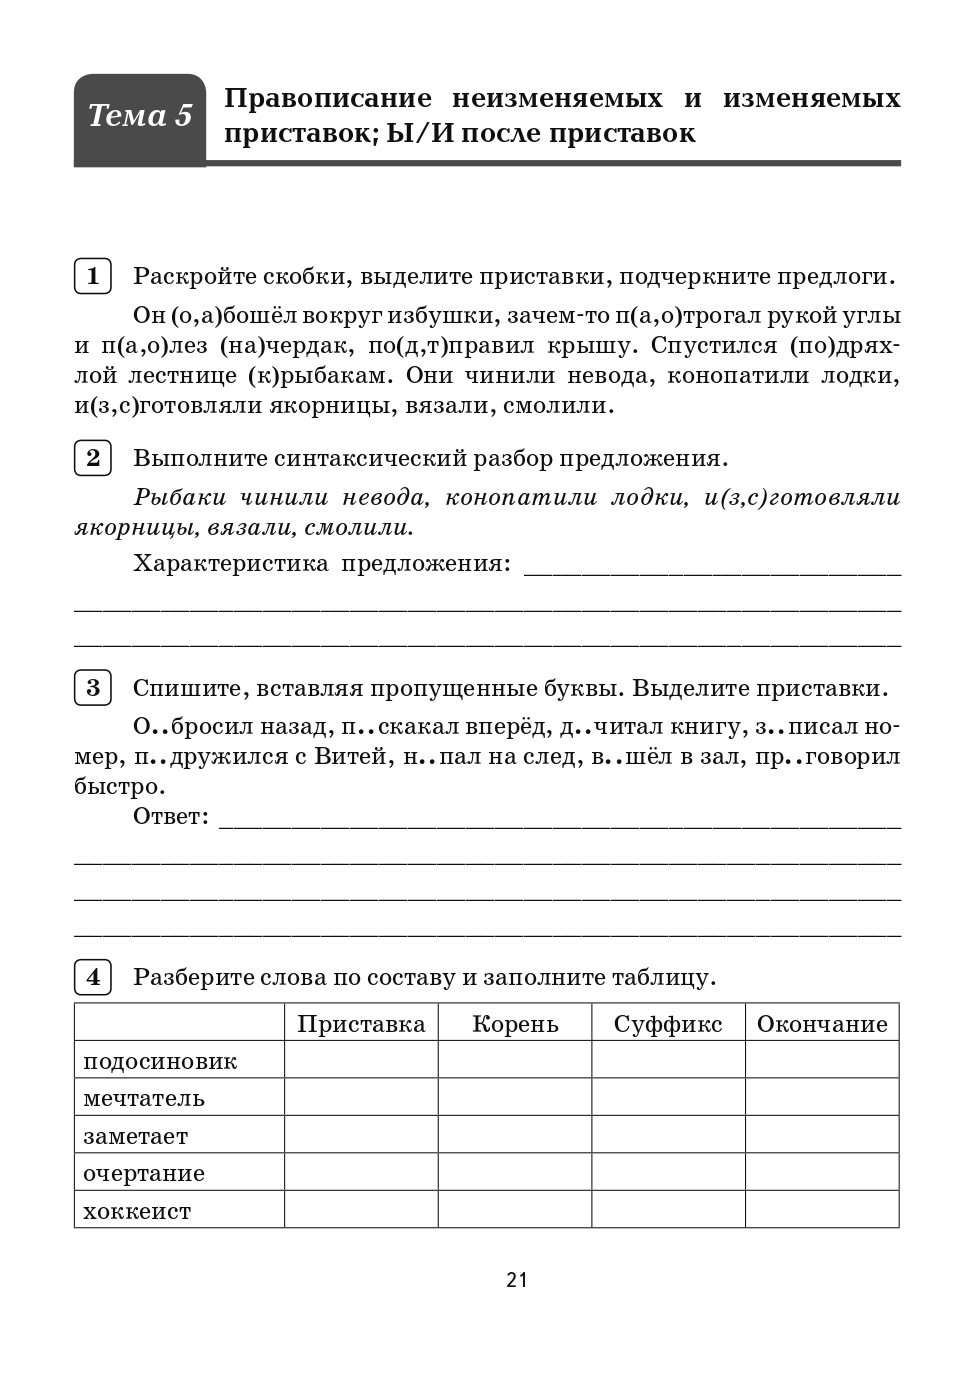 Русский язык. 5 класс. Орфографический тренинг.